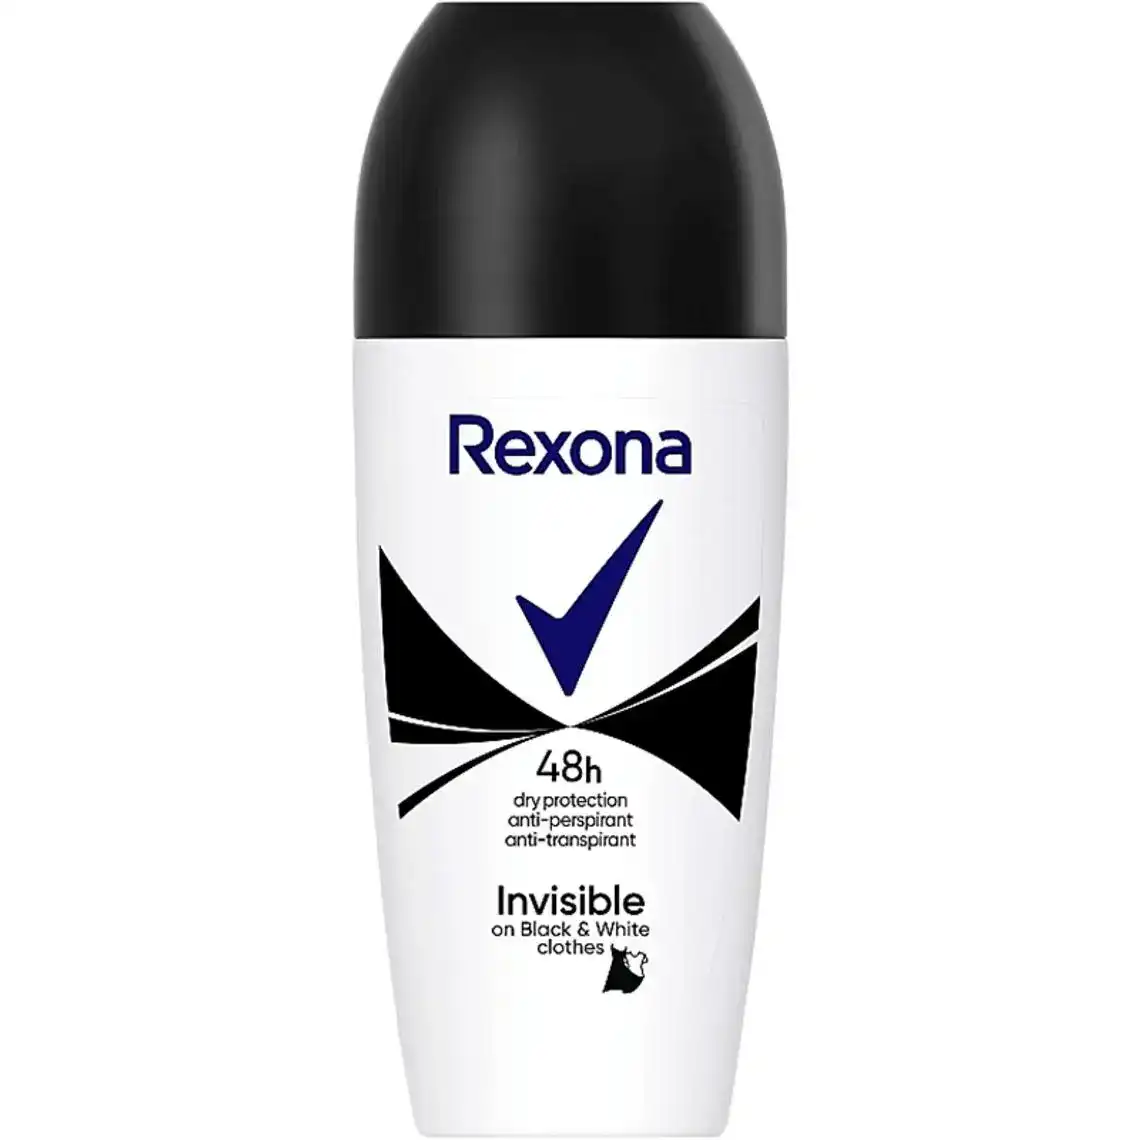 Дезодорант Rexona Невидима на чорному і білому роликовий 50 мл